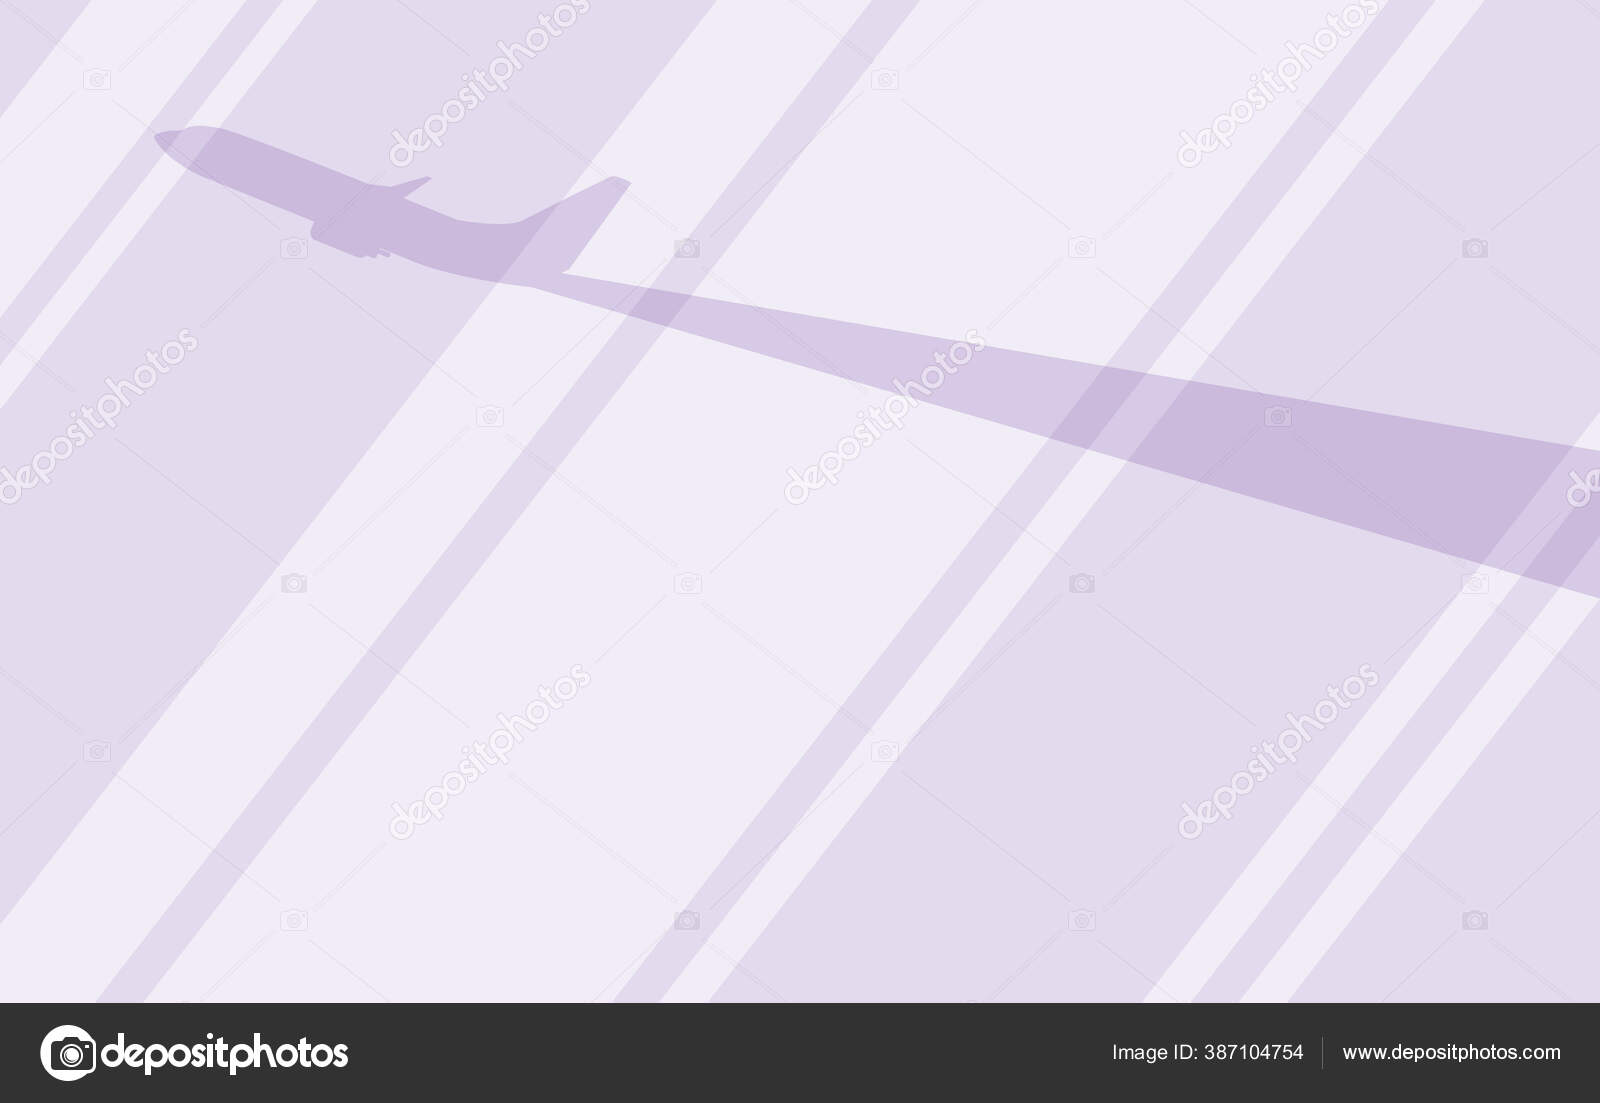  Pesawat  melalui desain  vektor jendela   Stok Vektor 